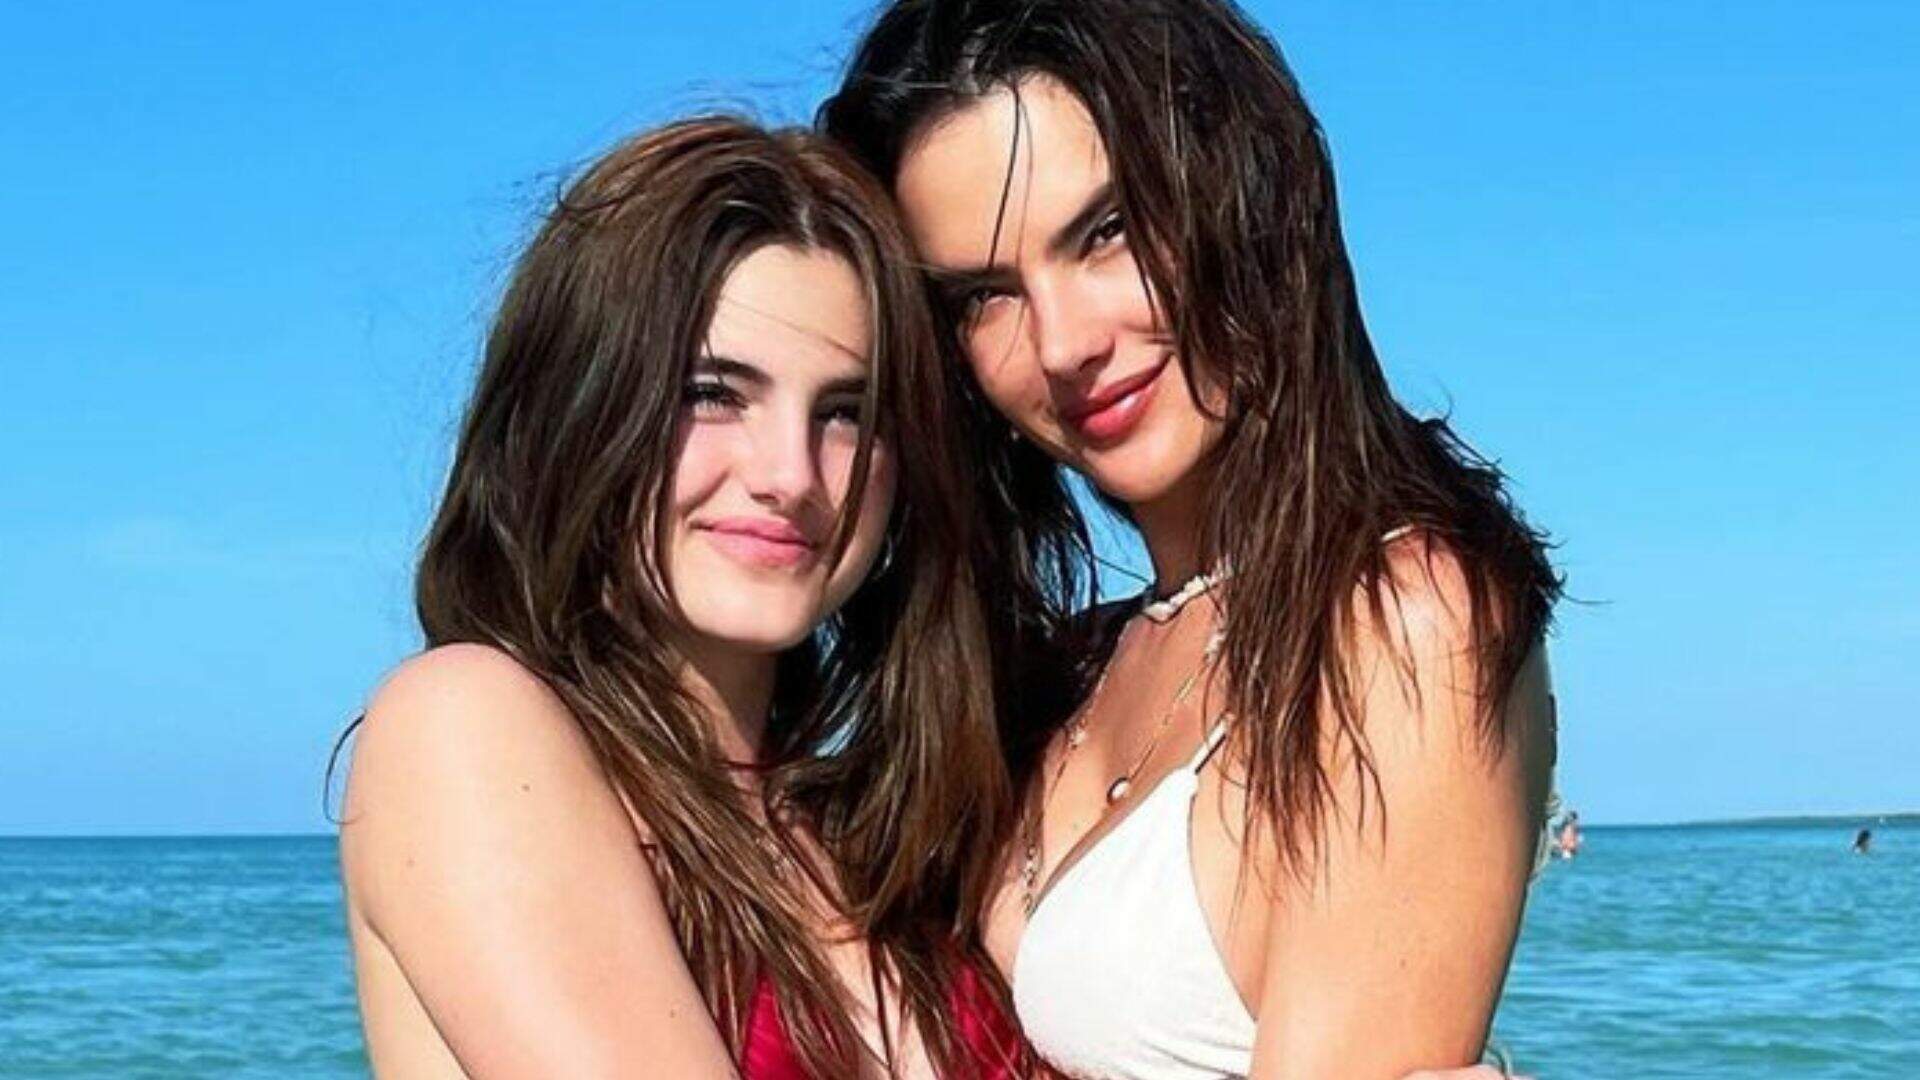 Alessandra Ambrósio curte dia de praia com a filha adolescente e semelhança surpreende: “Gêmeas” - Metropolitana FM